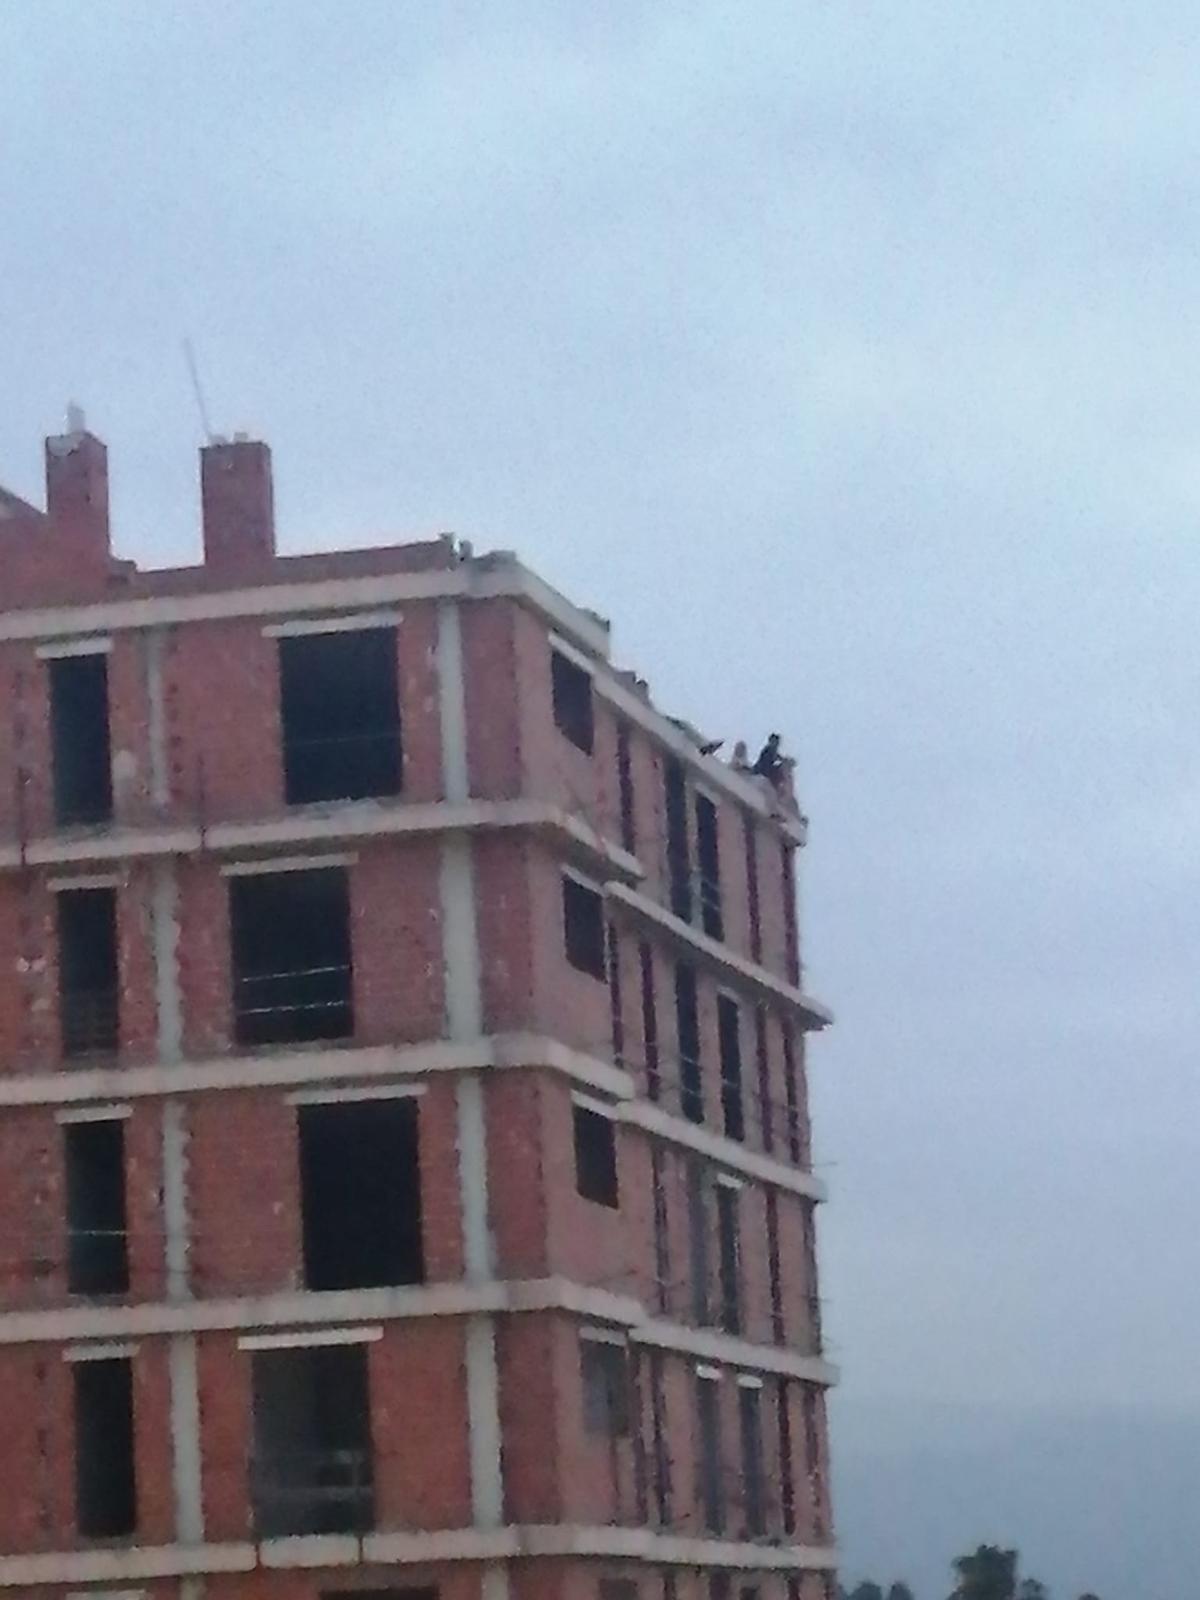 Personas subidas en el techo del edificio.